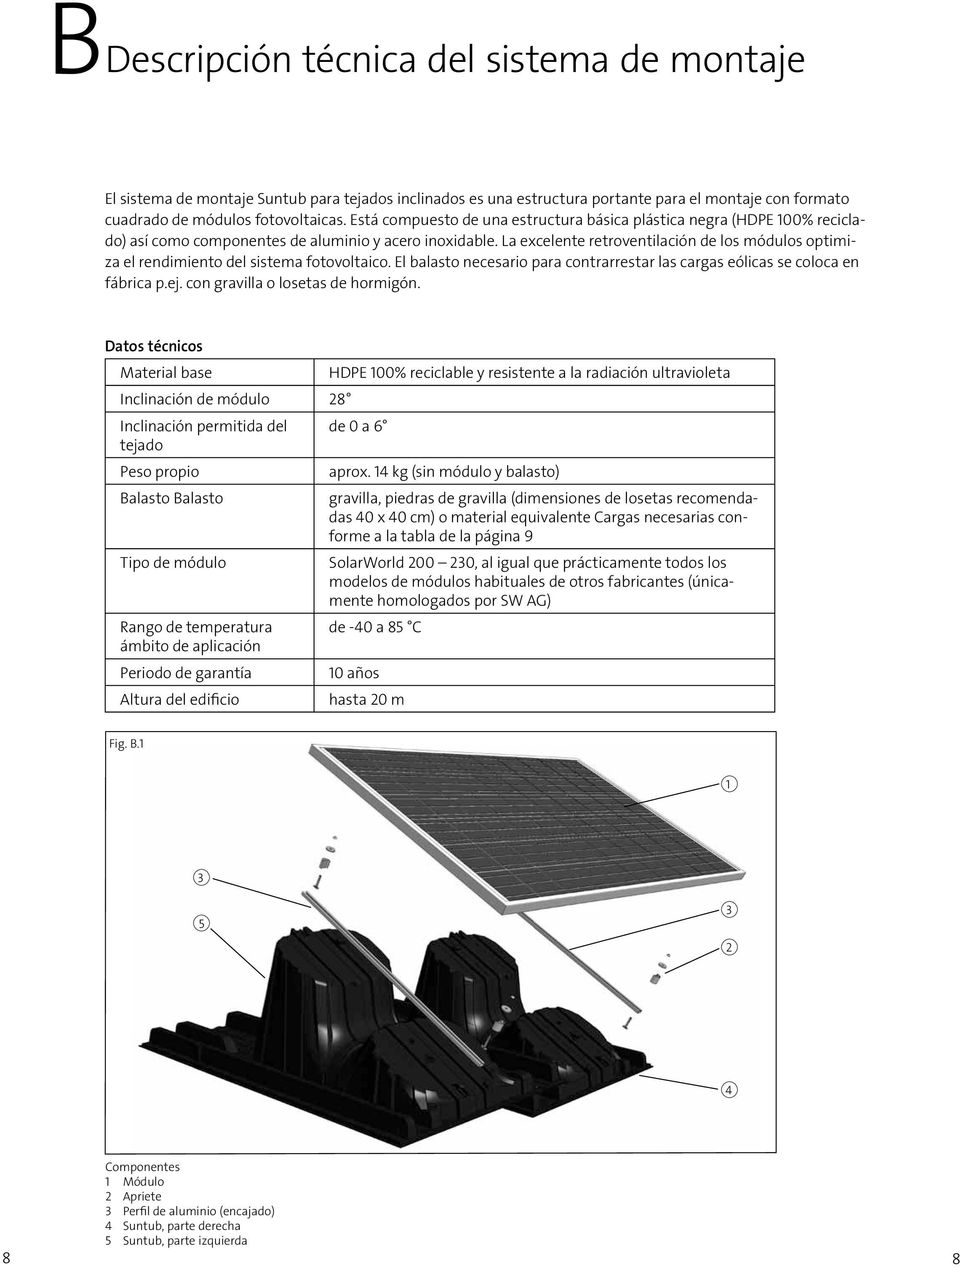 La excelente retroventilación de los módulos optimiza el rendimiento del sistema fotovoltaico. El balasto necesario para contrarrestar las cargas eólicas se coloca en fábrica p.ej.